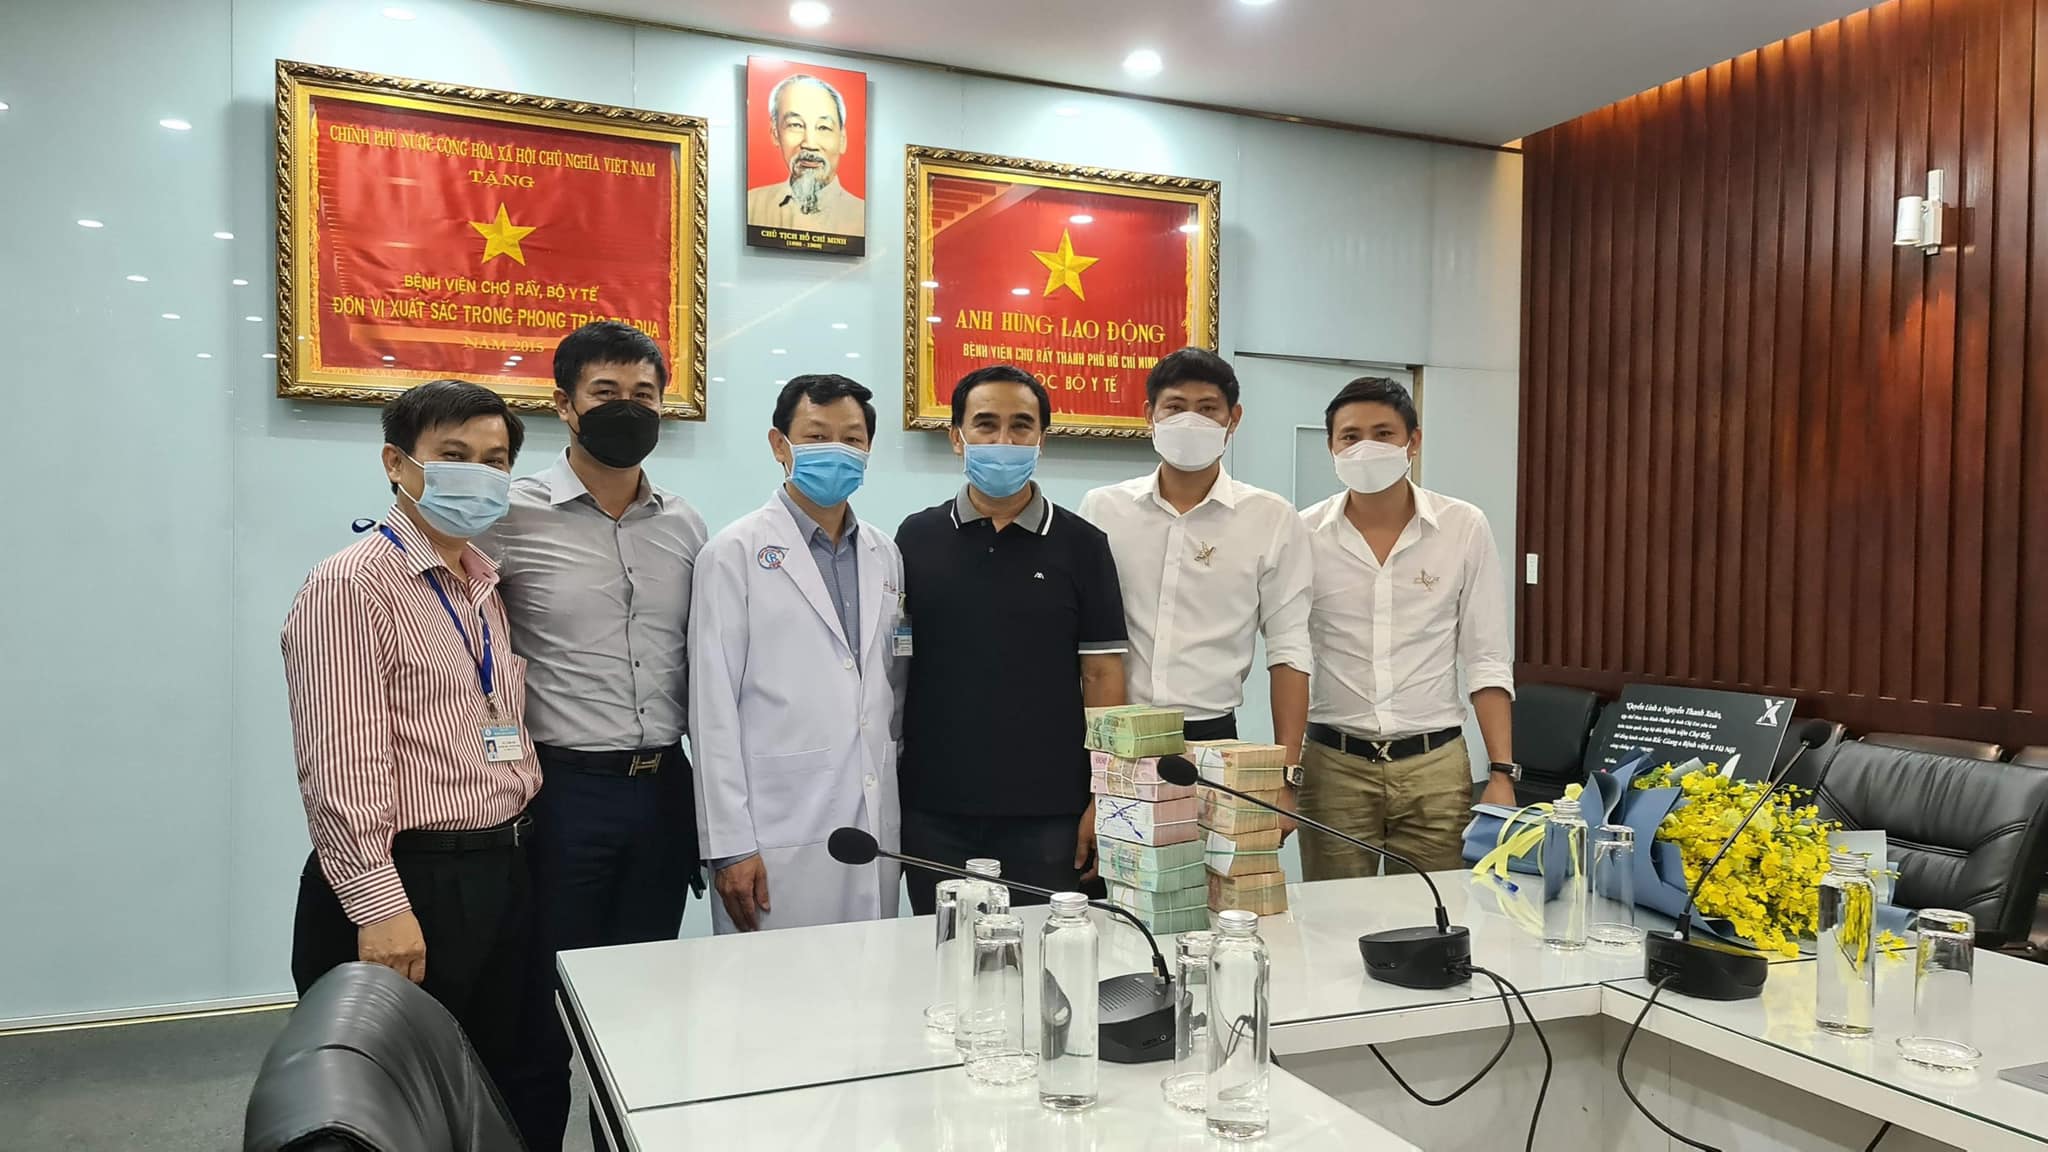 Quyền Linh cùng bạn bè quyên góp 2 tỷ hỗ trợ Bắc Giang chống dịch, CĐM khen ngợi: 'Không bao giờ làm thất vọng' - ảnh 5